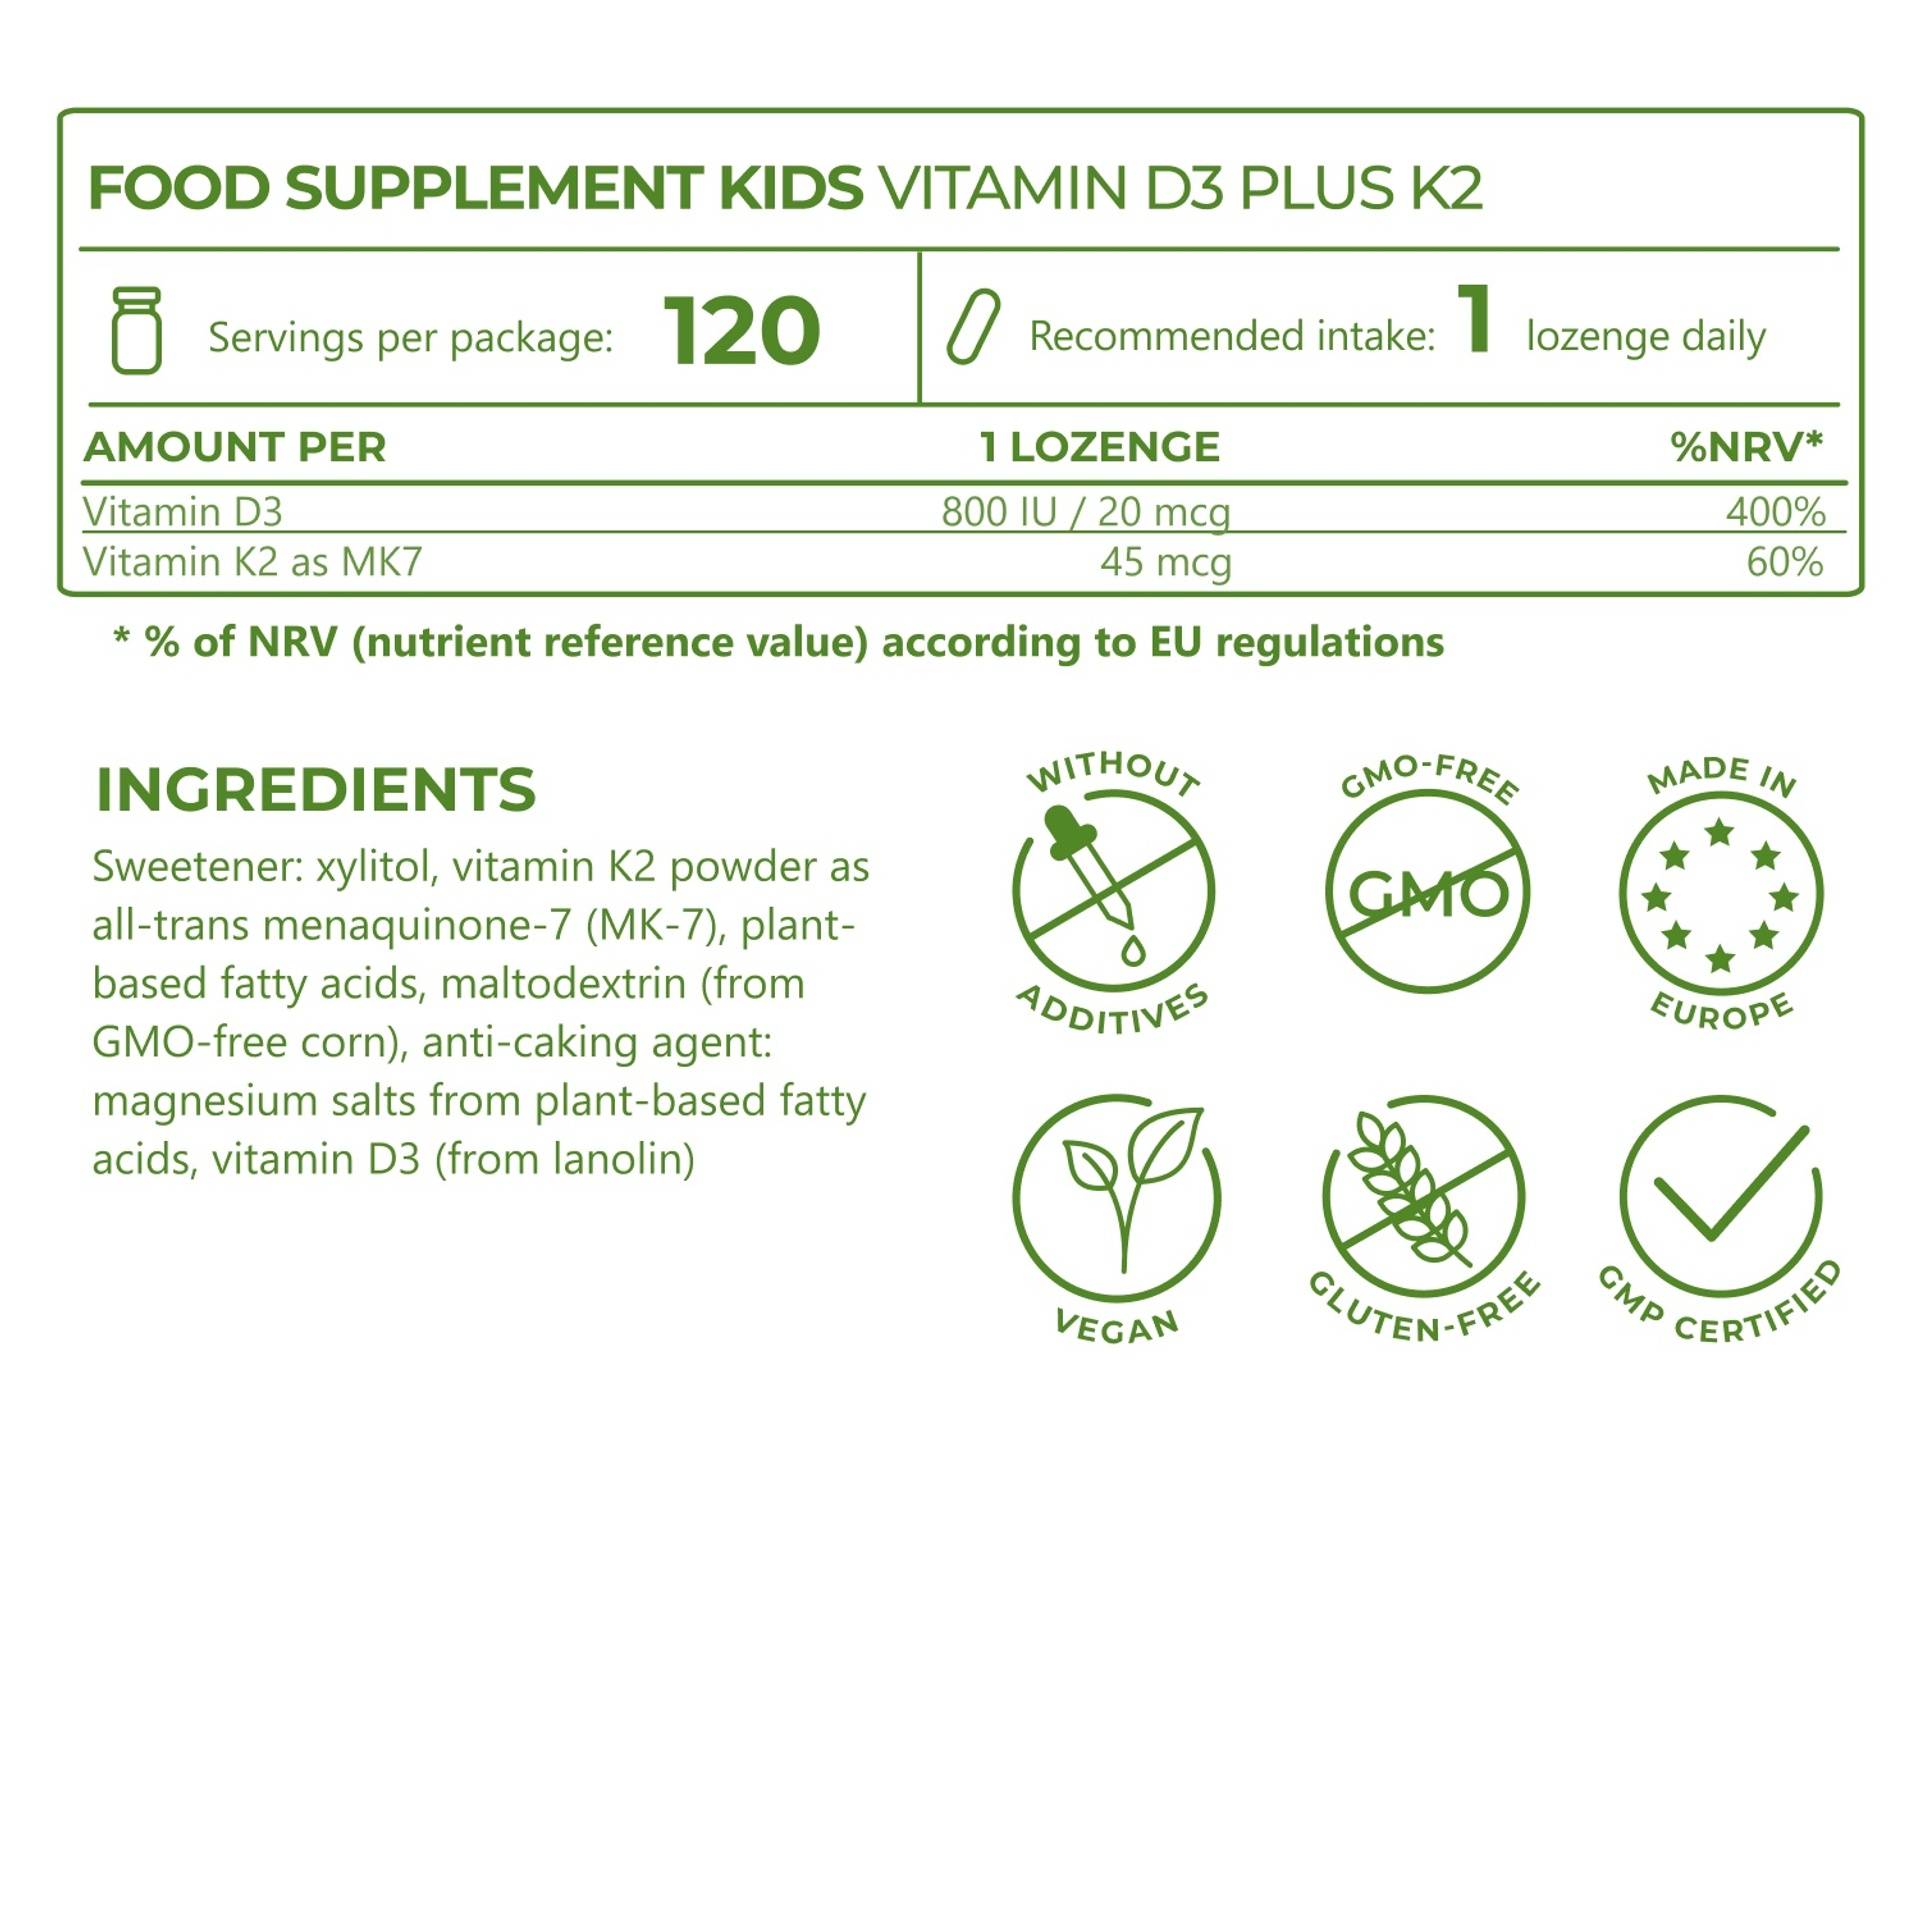 5_Ingredients_Kids Vitamin D3 plus K2_5602-27_EN.png